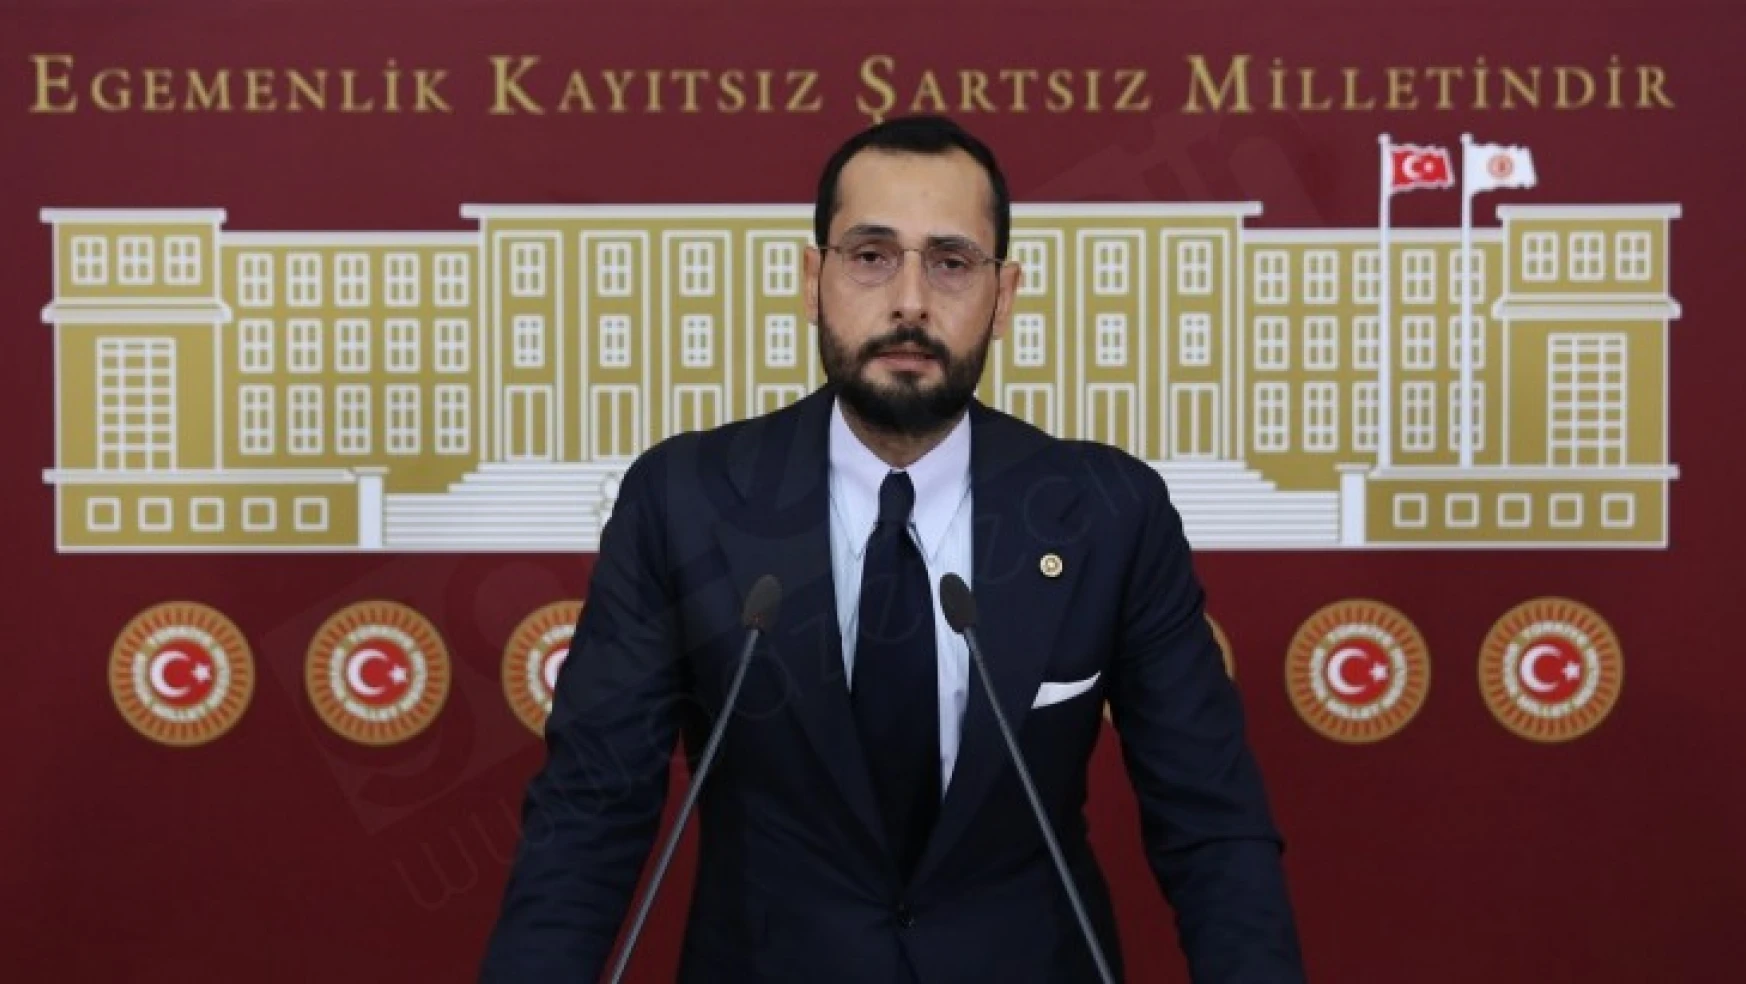 AK Parti Milletvekili Sezal, CHP'de toplanan 40 Milyon TL'yi sordu: Nerede?